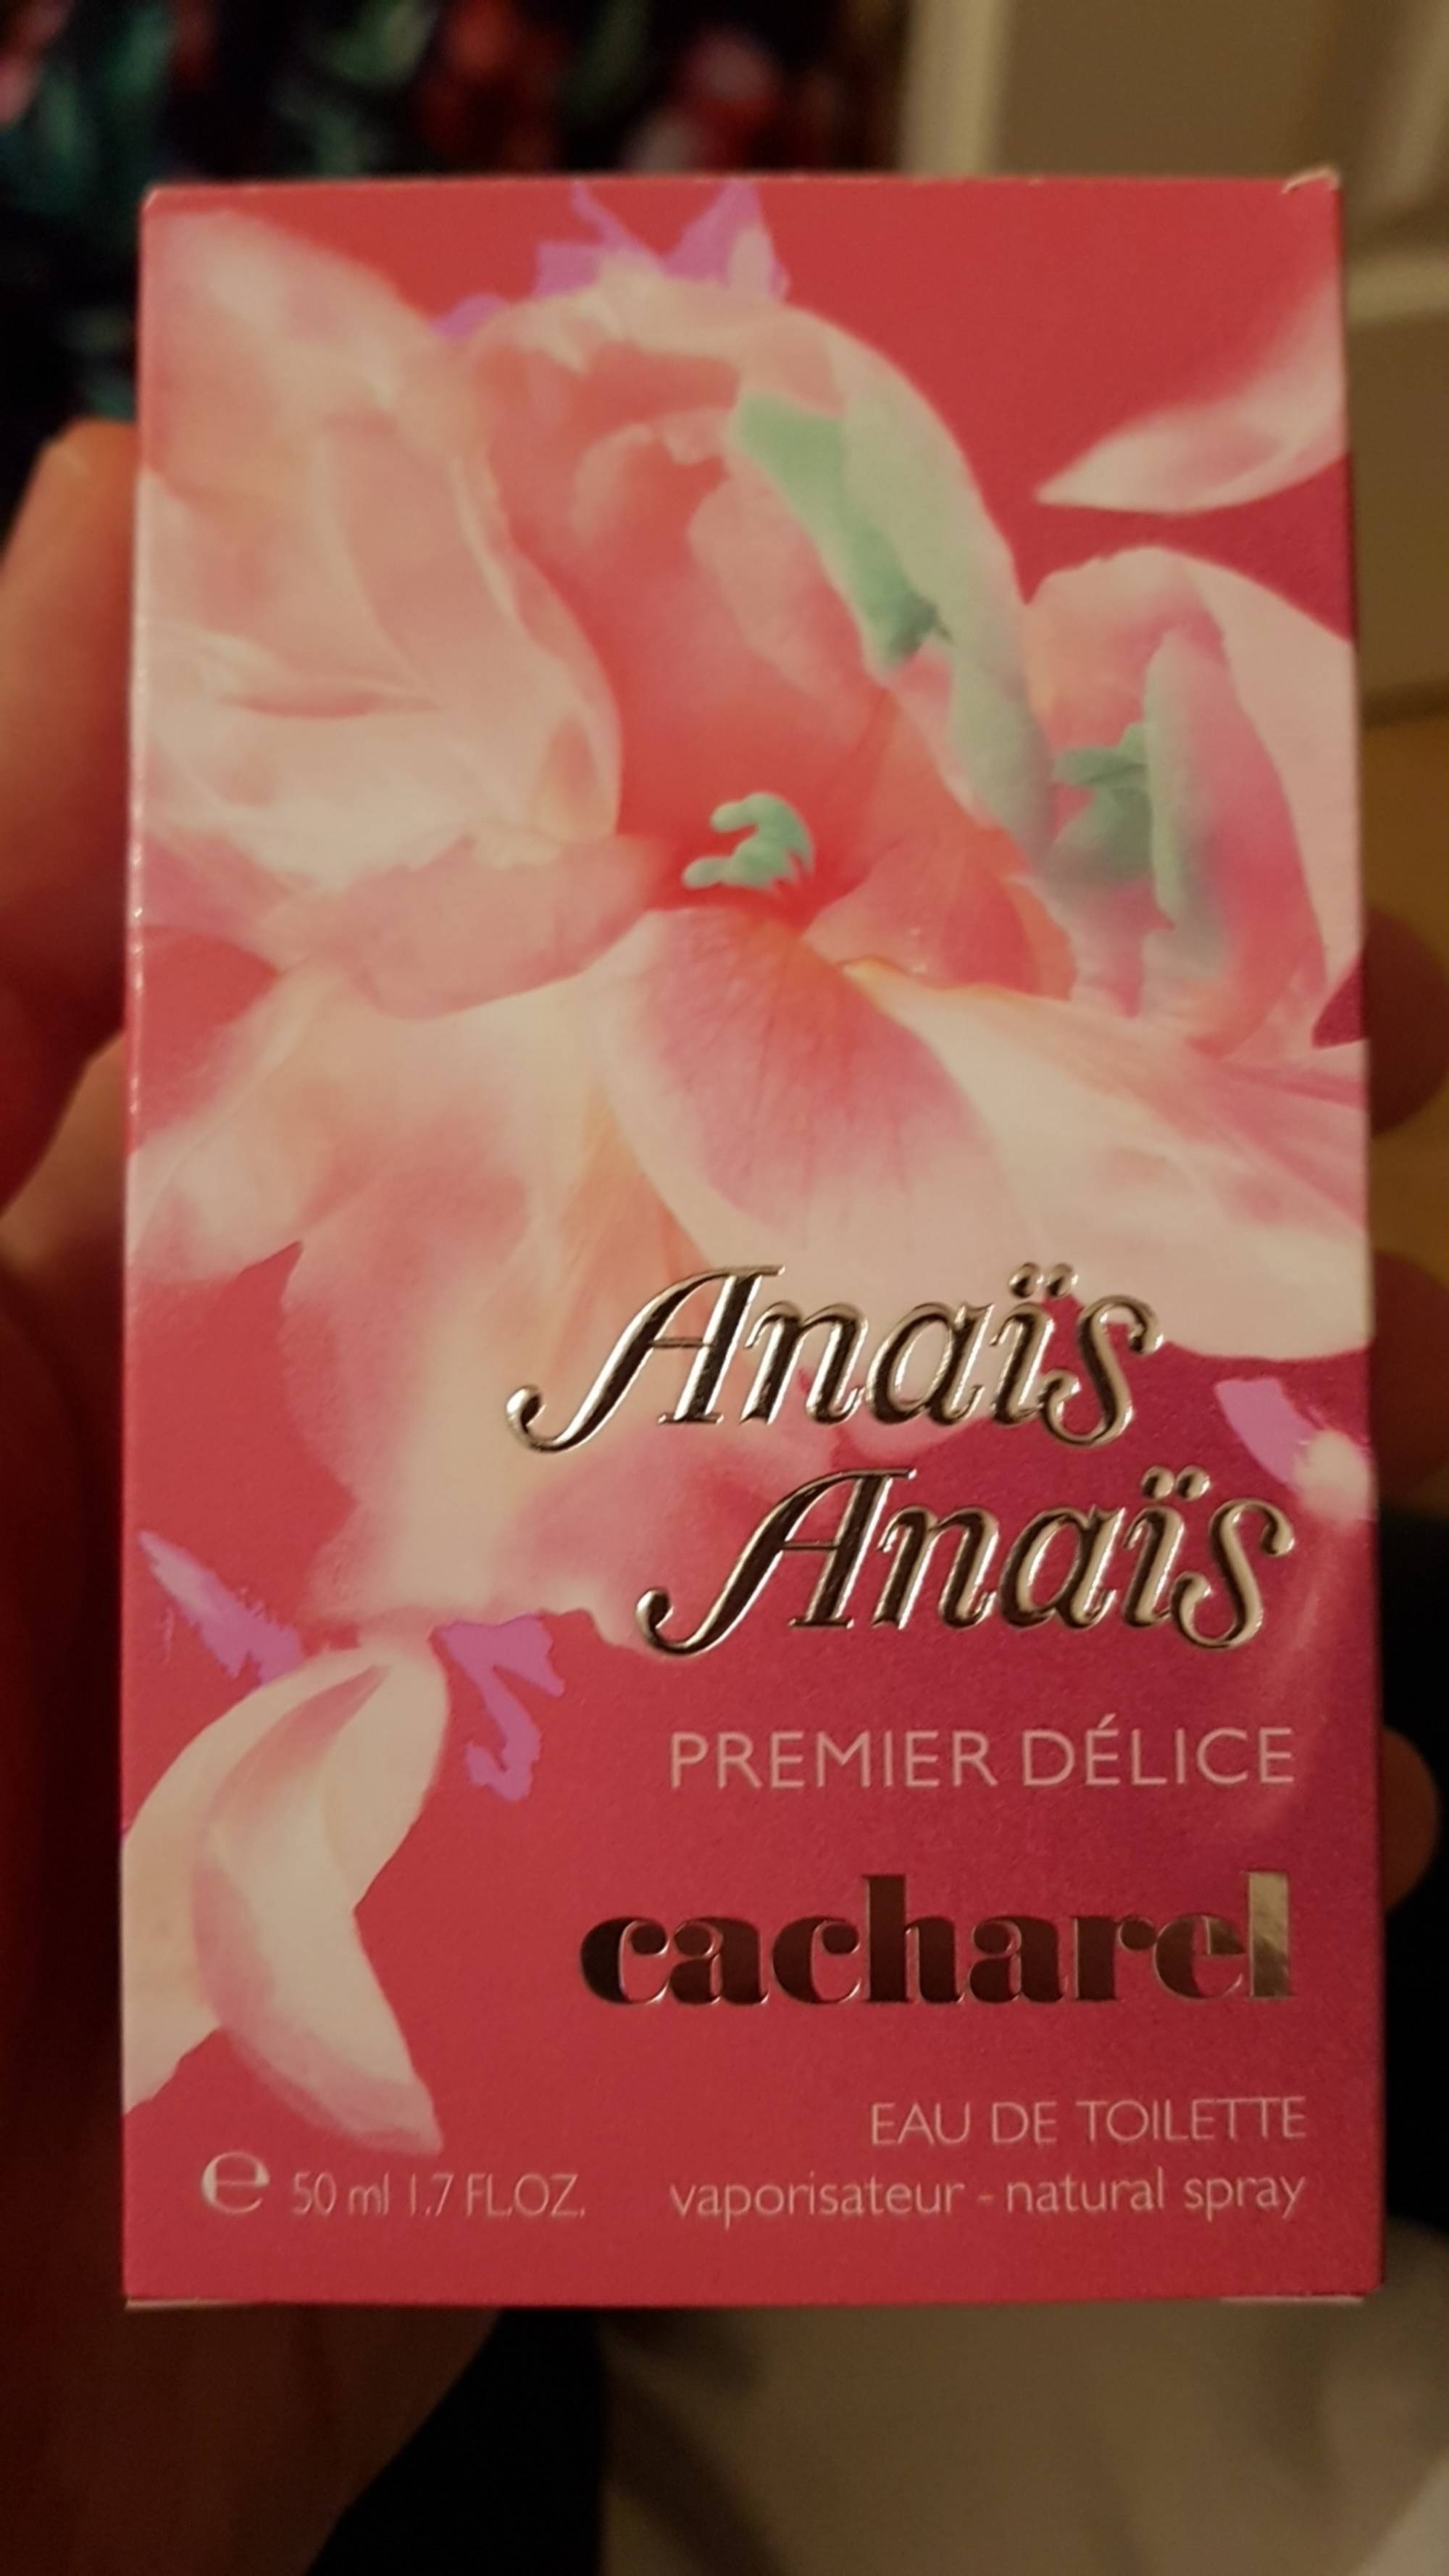 CACHAREL - Anaïs Anaïs - Eau de toilette